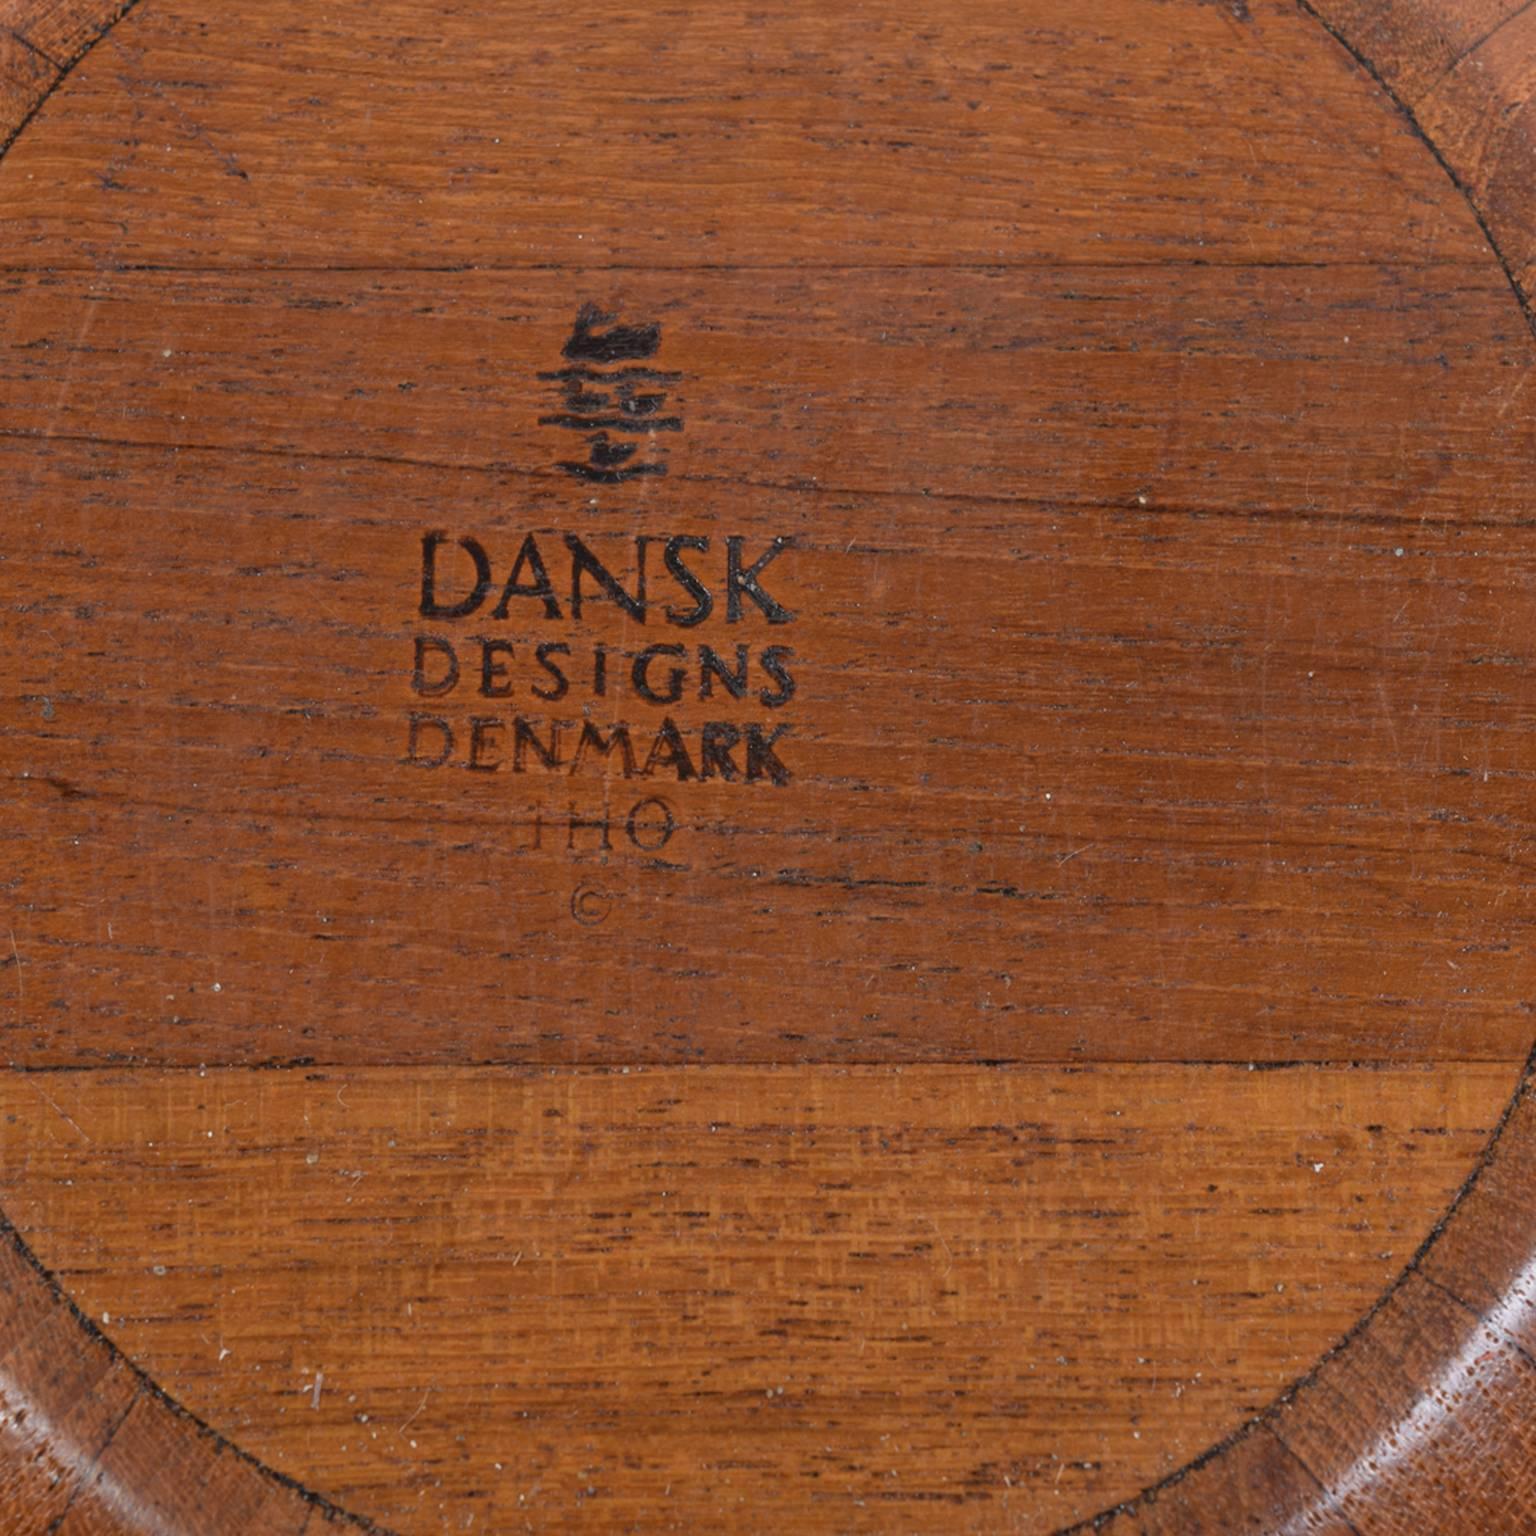 Jens H. Quistgaard Large Teak Bowls for Dansk one at NYDC 2